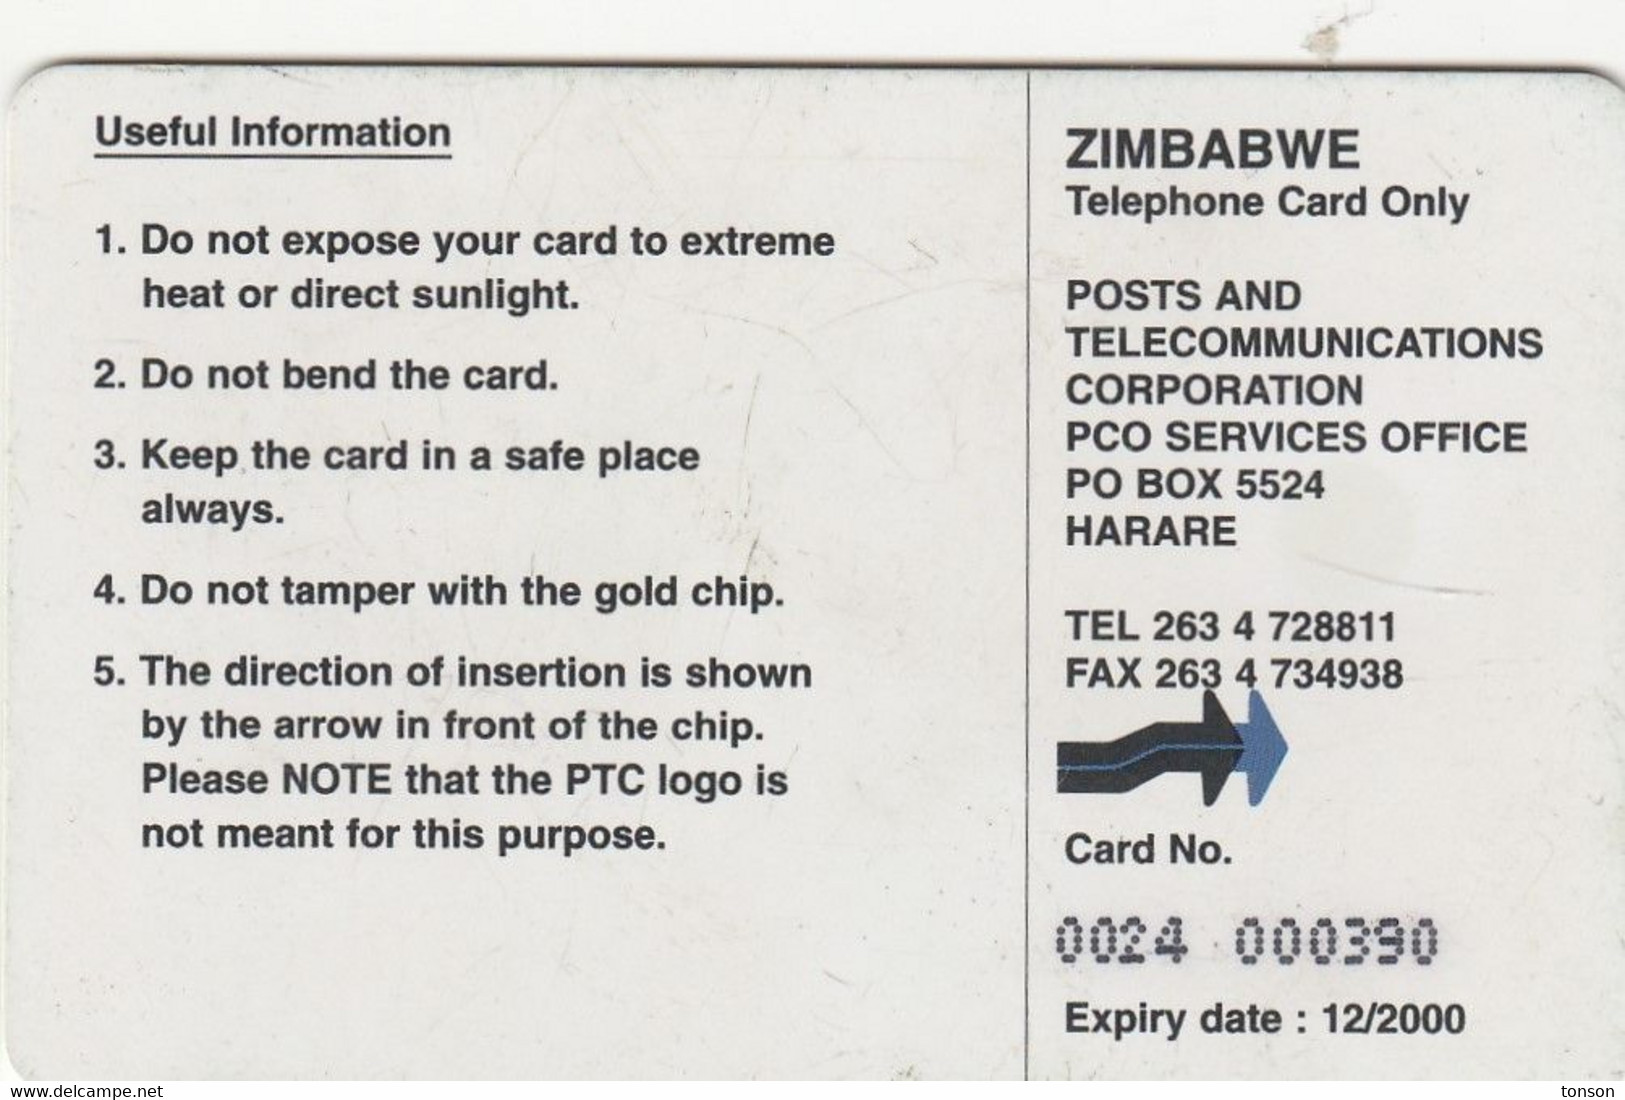 Zimbabwe, ZIM-26, $50, Flamboyants, Trees, 2 Scans. - Simbabwe